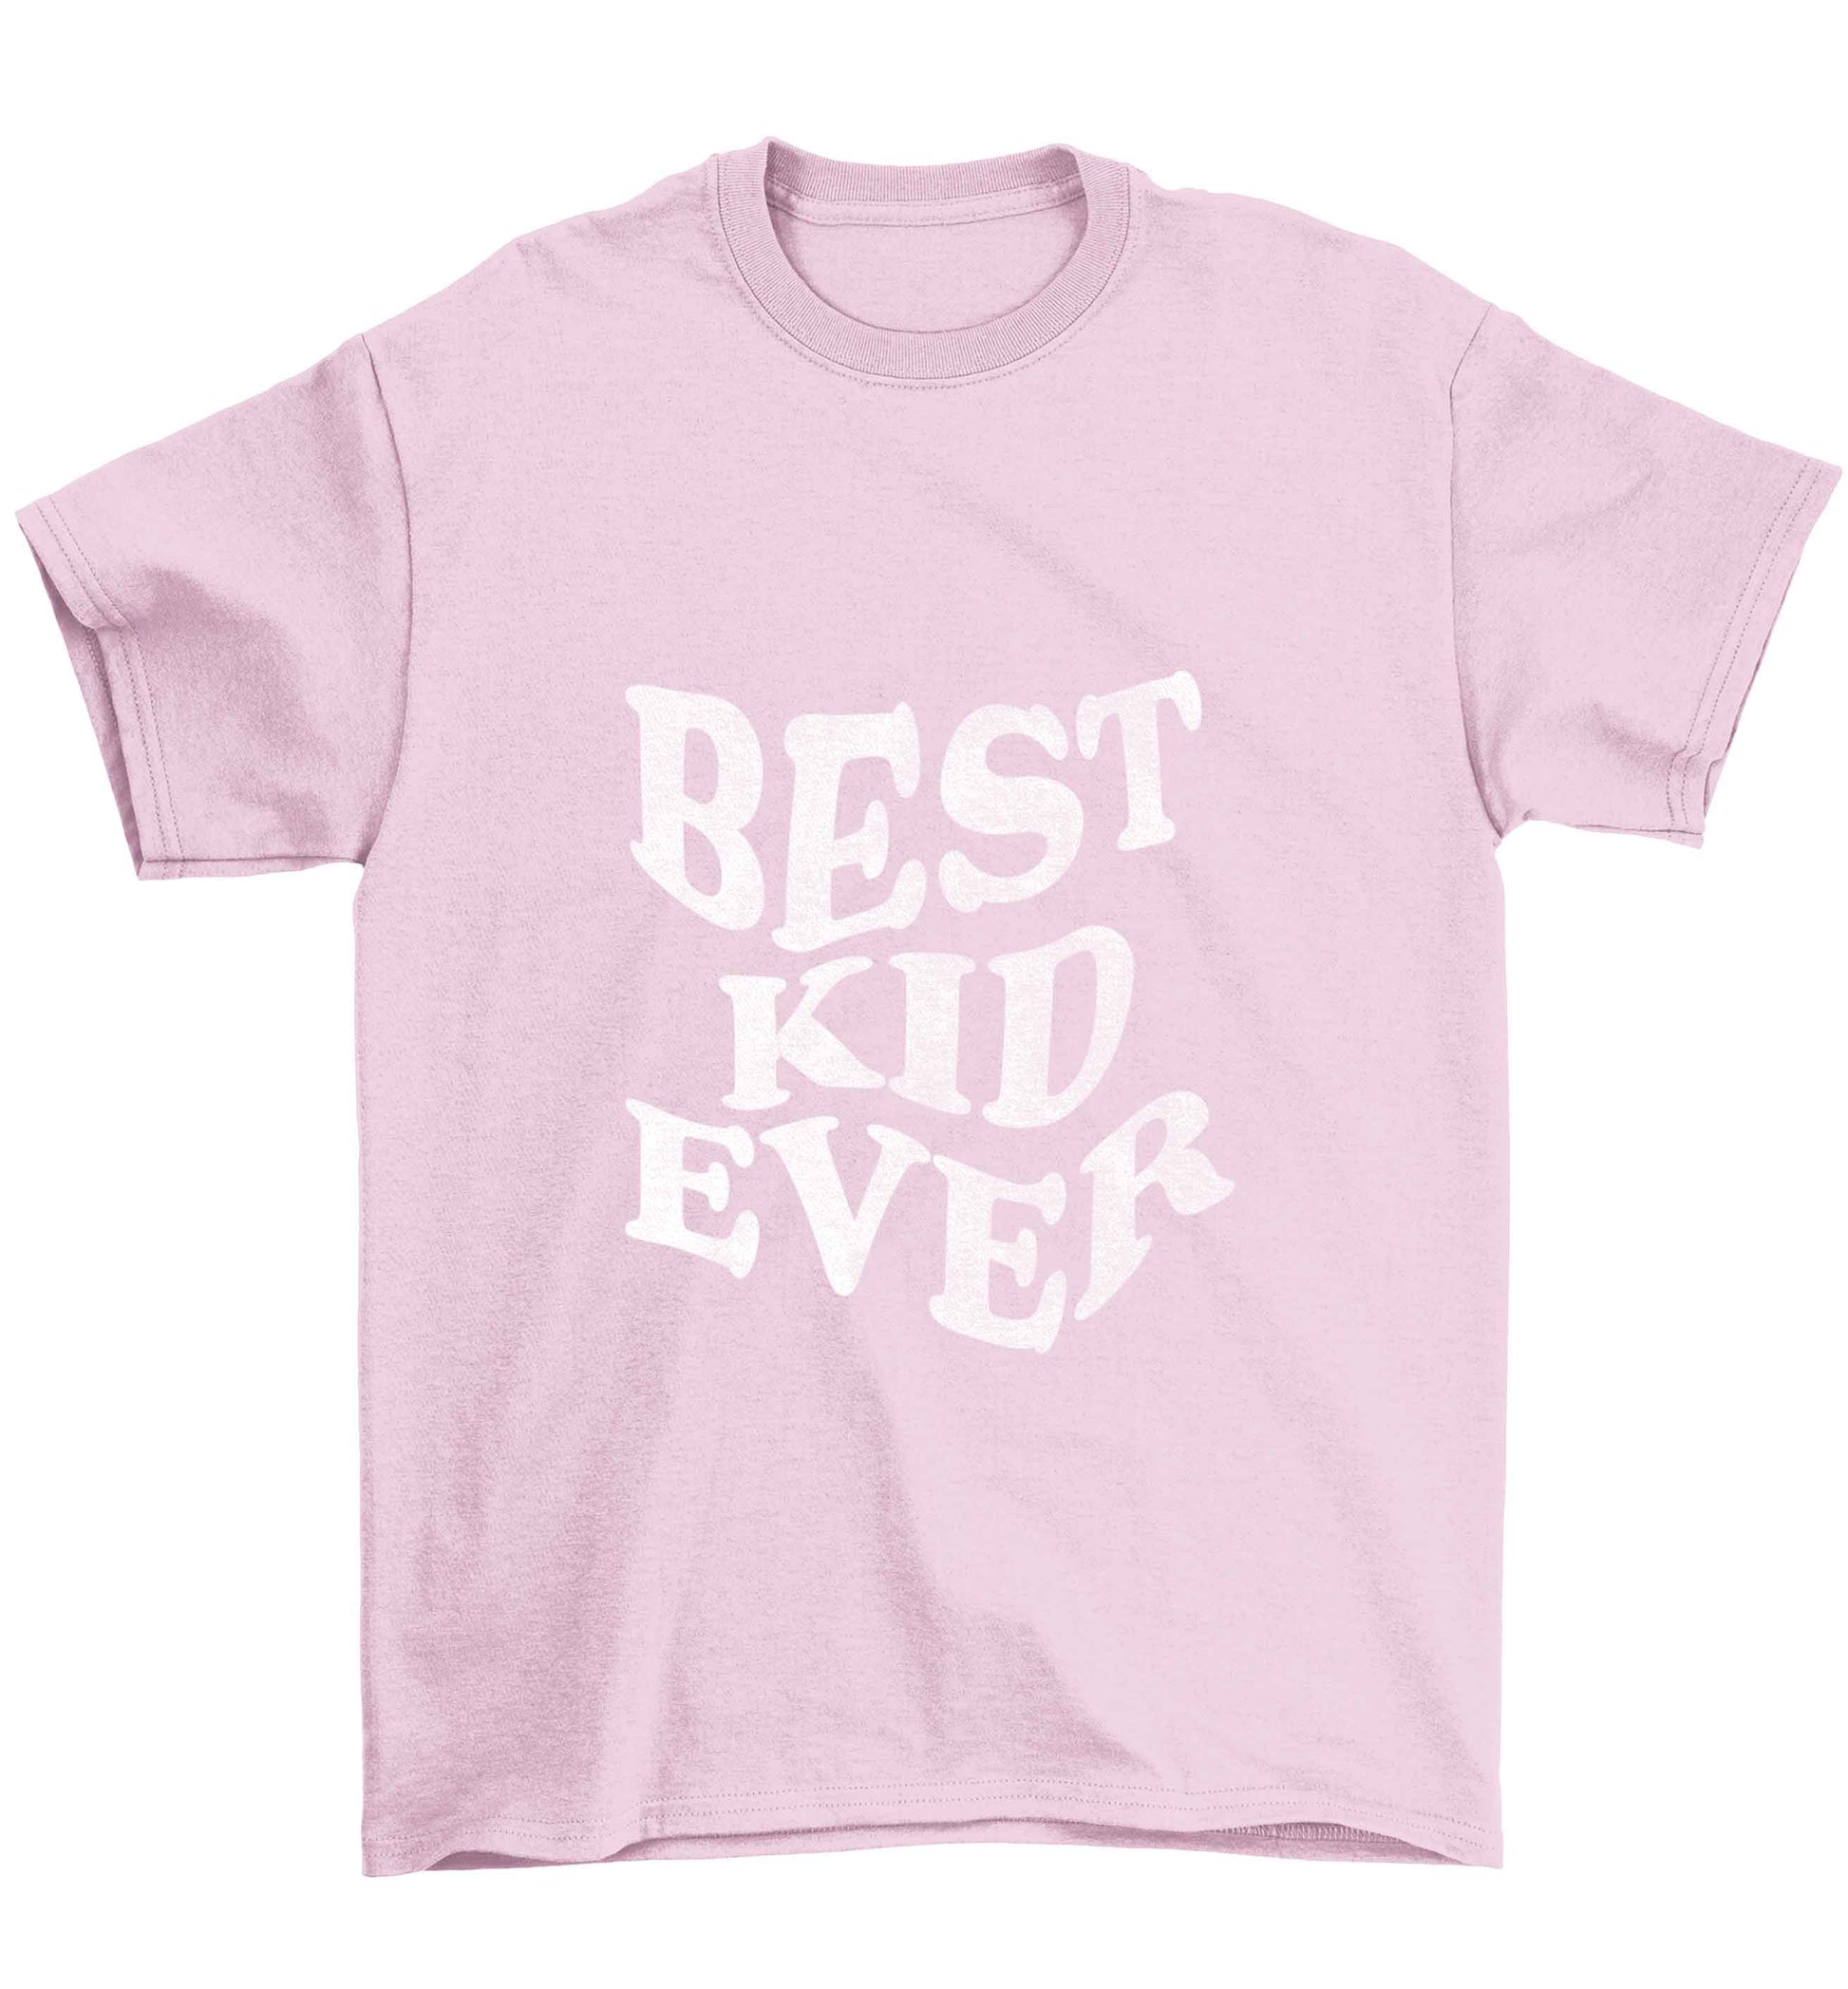 Best kid ever Children's light pink Tshirt 12-13 Years